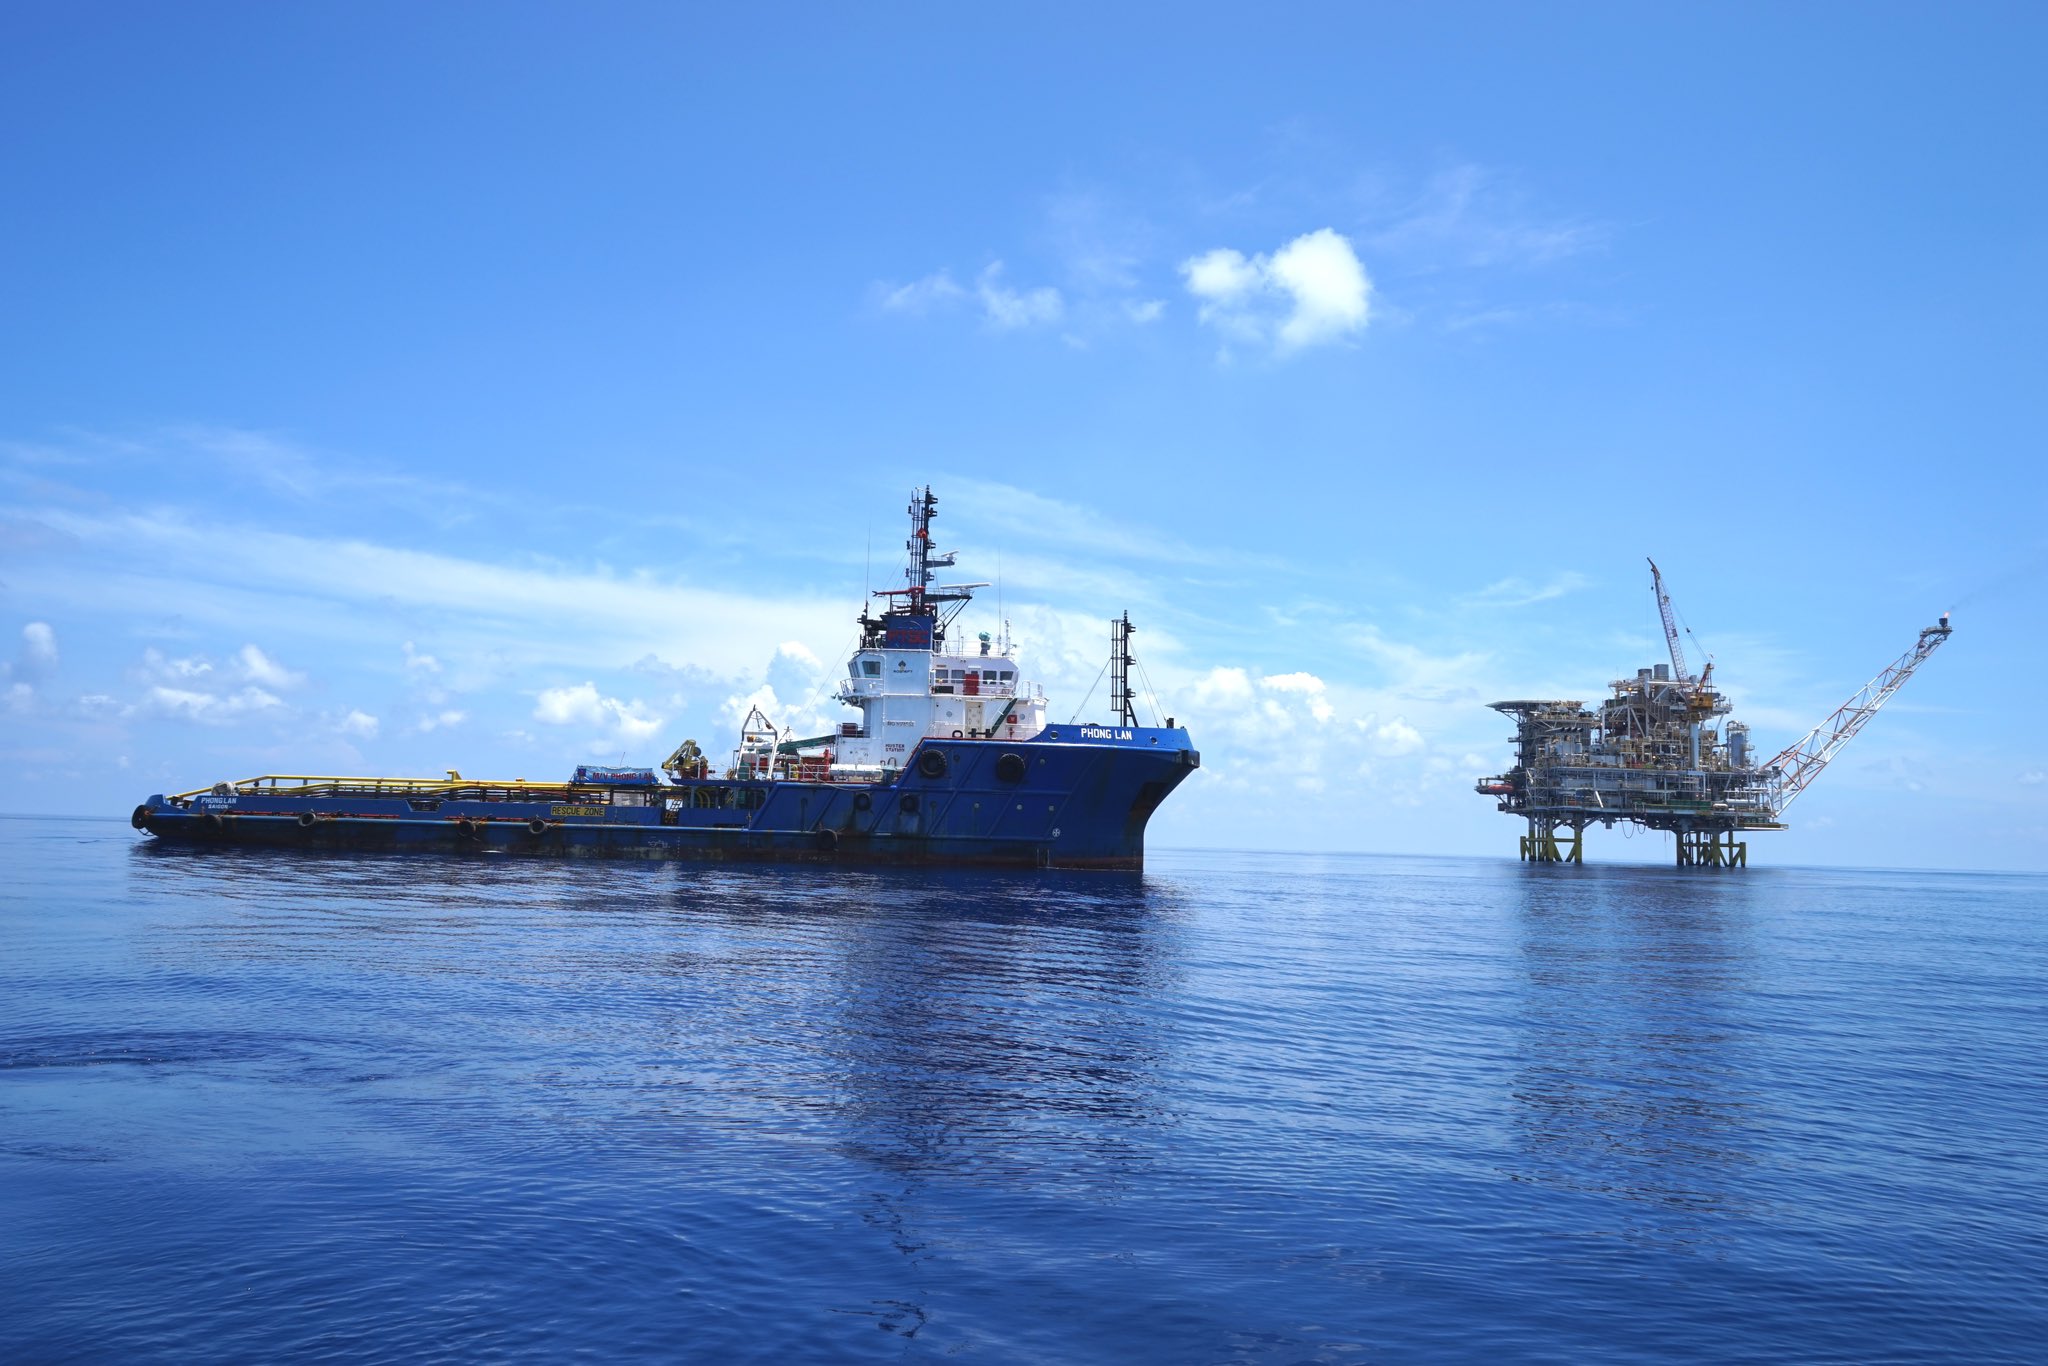 منصة لاستكشاف النفط والغاز في بحر الصين الجنوبي تابعة لشركة أو إن جي سي فيديش